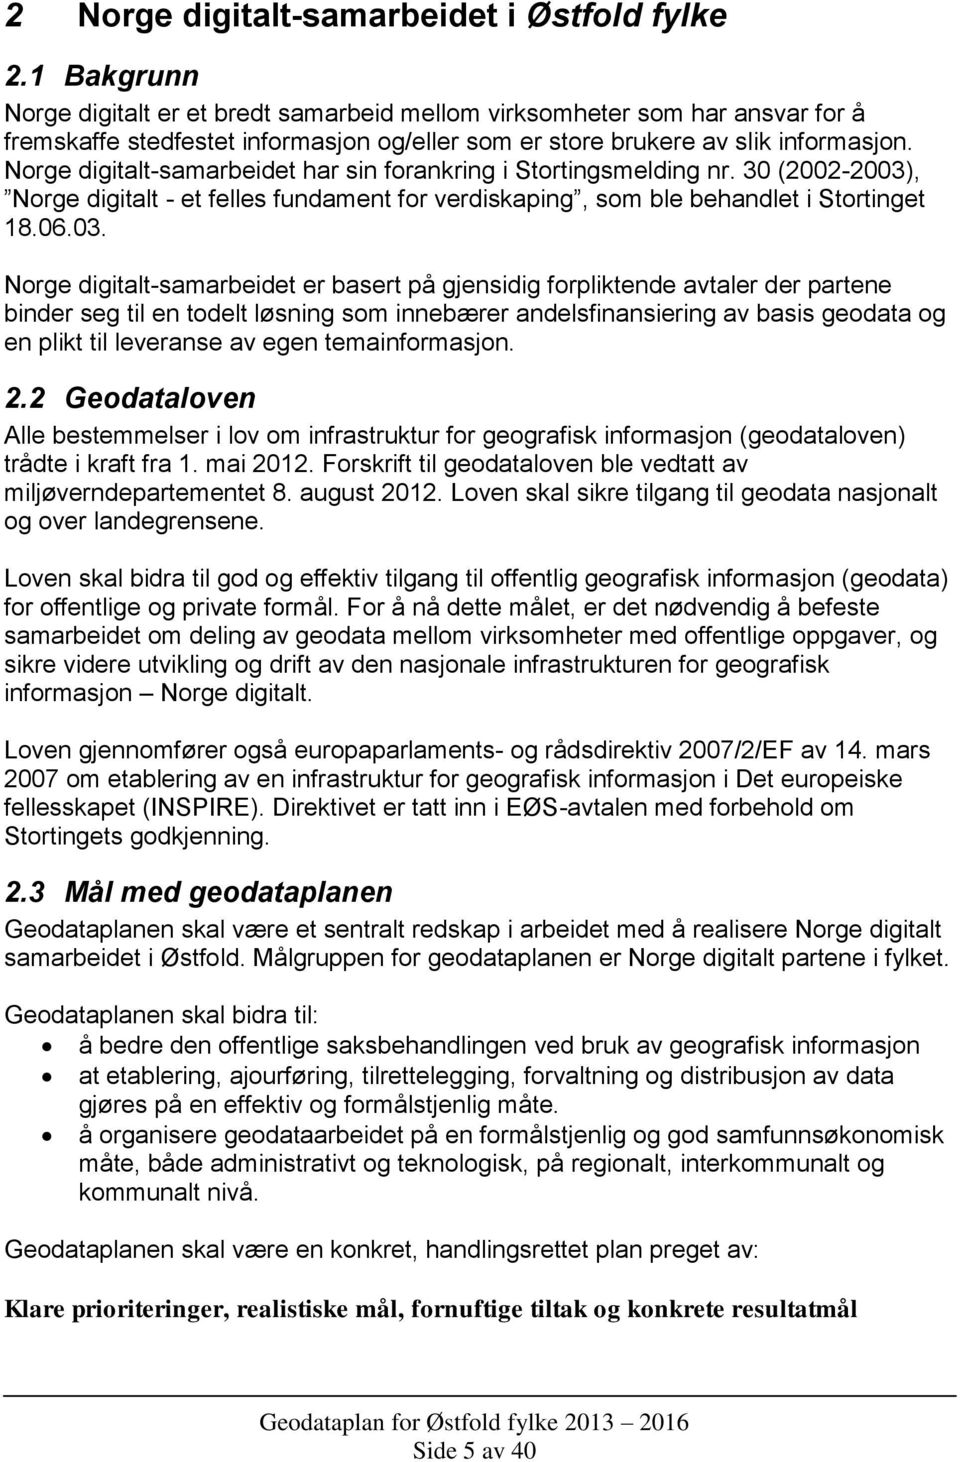 Norge digitalt-samarbeidet har sin forankring i Stortingsmelding nr. 30 (2002-2003)